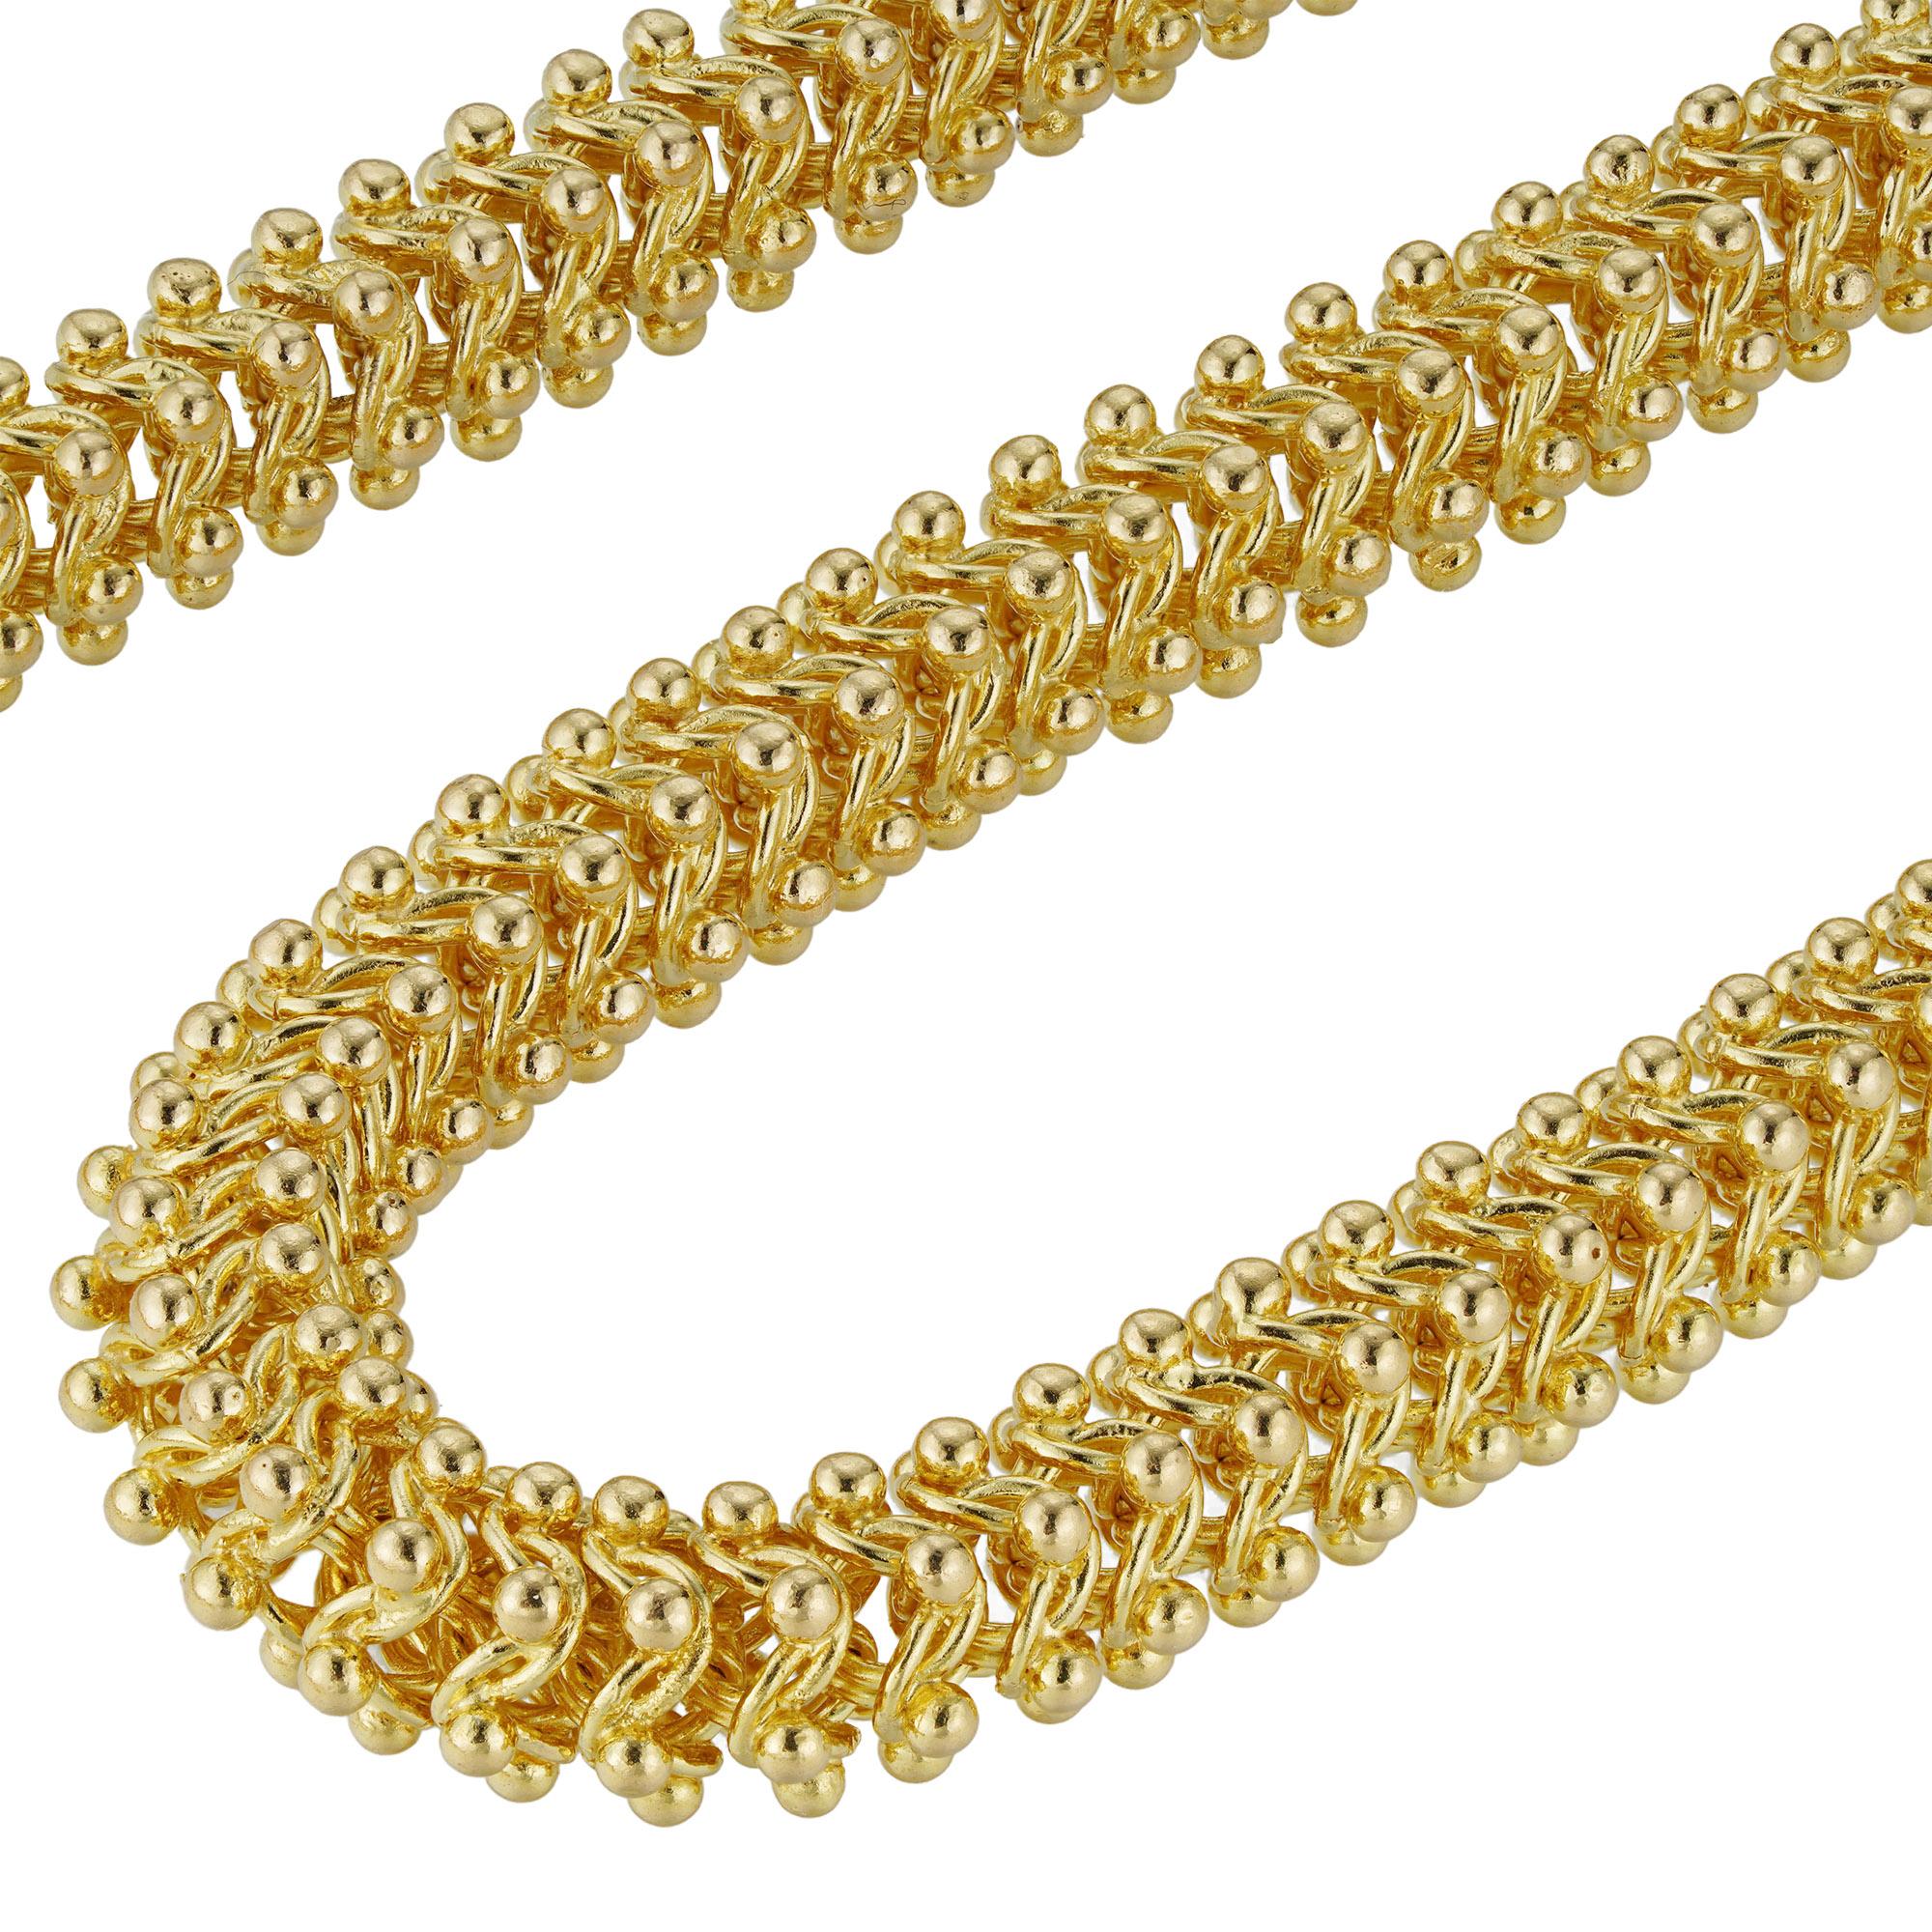 Une suite de chaînes et de bracelets Shéhérazade, réalisée à la main par Lucie Heskett-Brem, la Tisseuse d'or de Lucerne, composée de maillons entrelacés en or jaune, avec des fermoirs cachés, poinçonnés en or 18ct à Londres, le collier mesurant 46